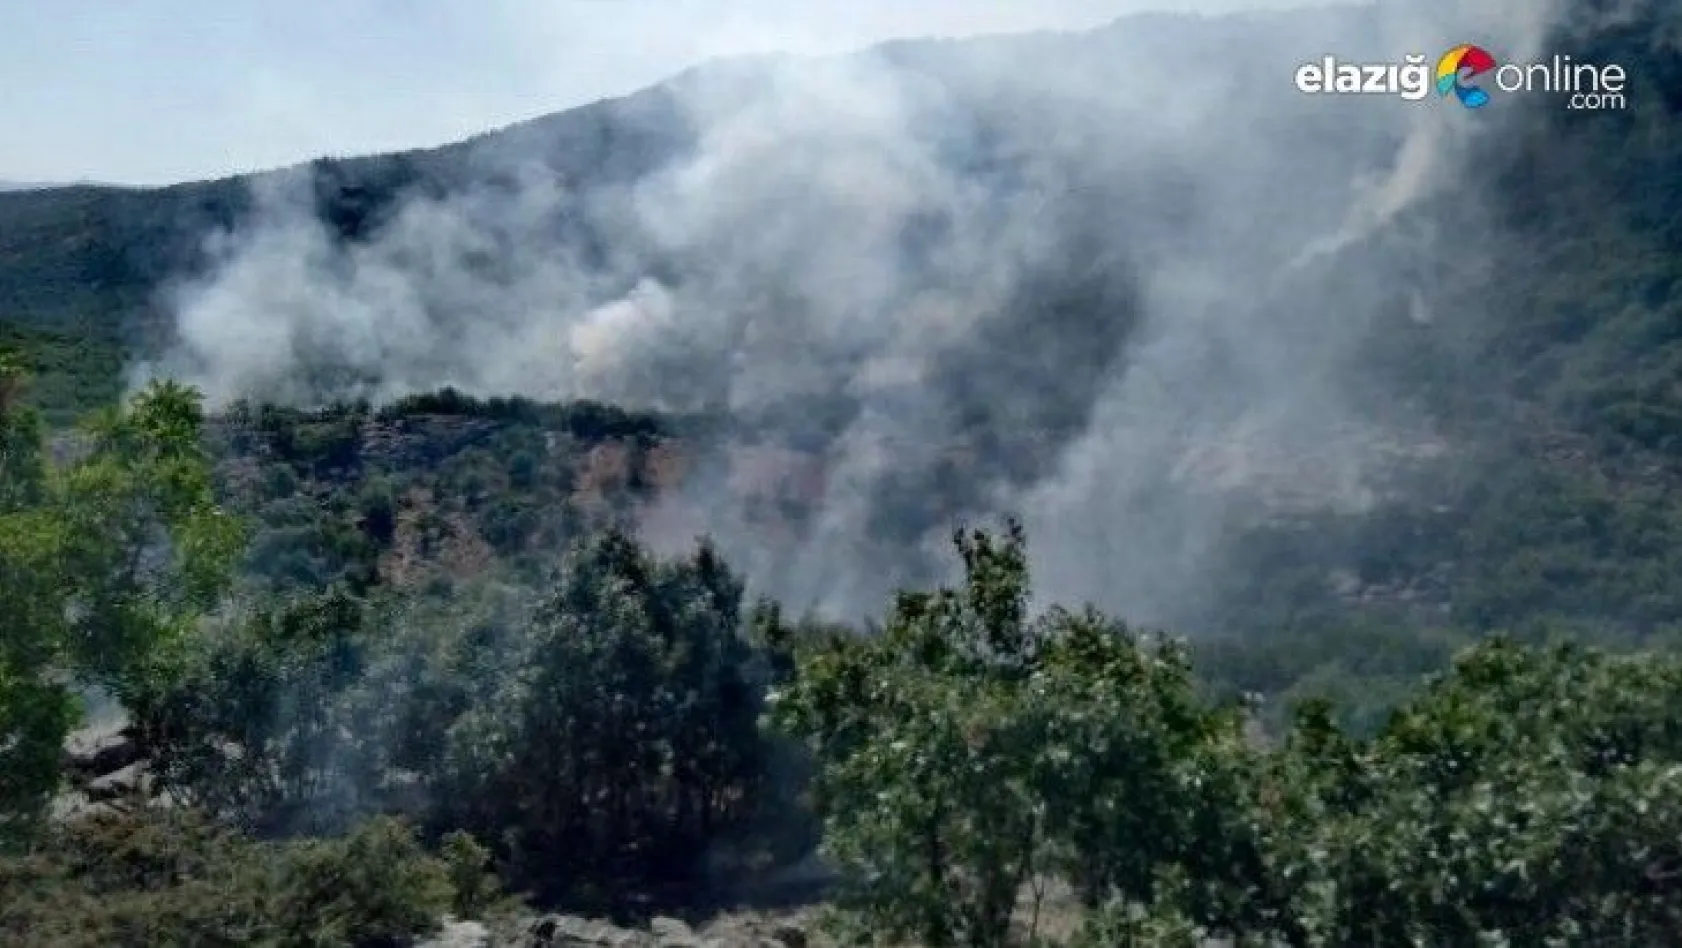 Elazığ'ın Arıcak ilçesinde ormanlık alanda yangın çıktı